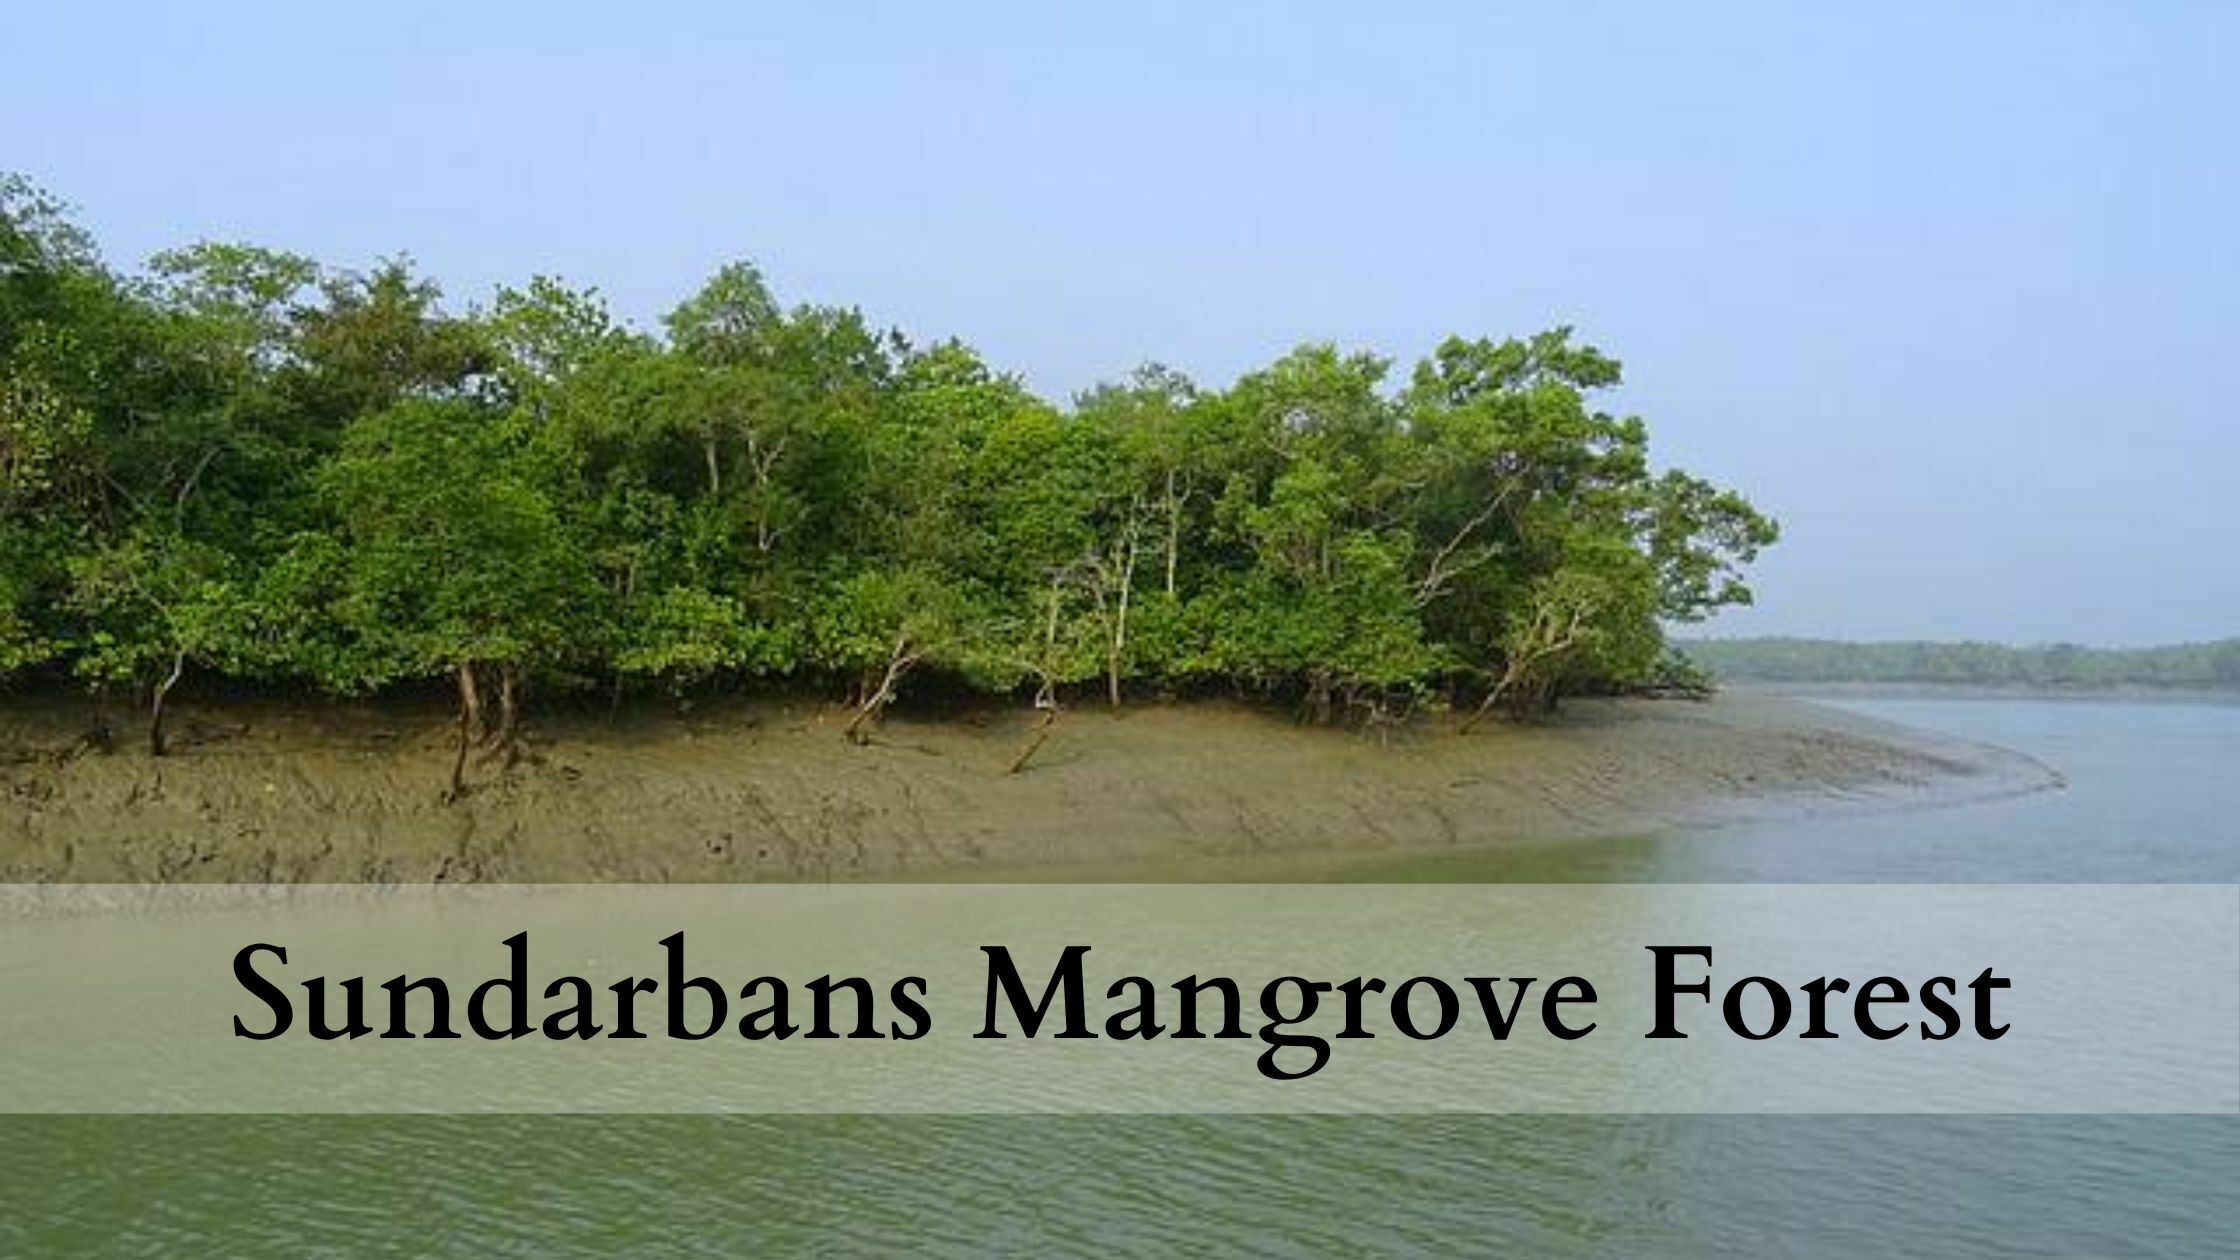 2023] Sundarban Mangrove Forest - Beauty, Mystery, Dangers - Sundarbans JFMC